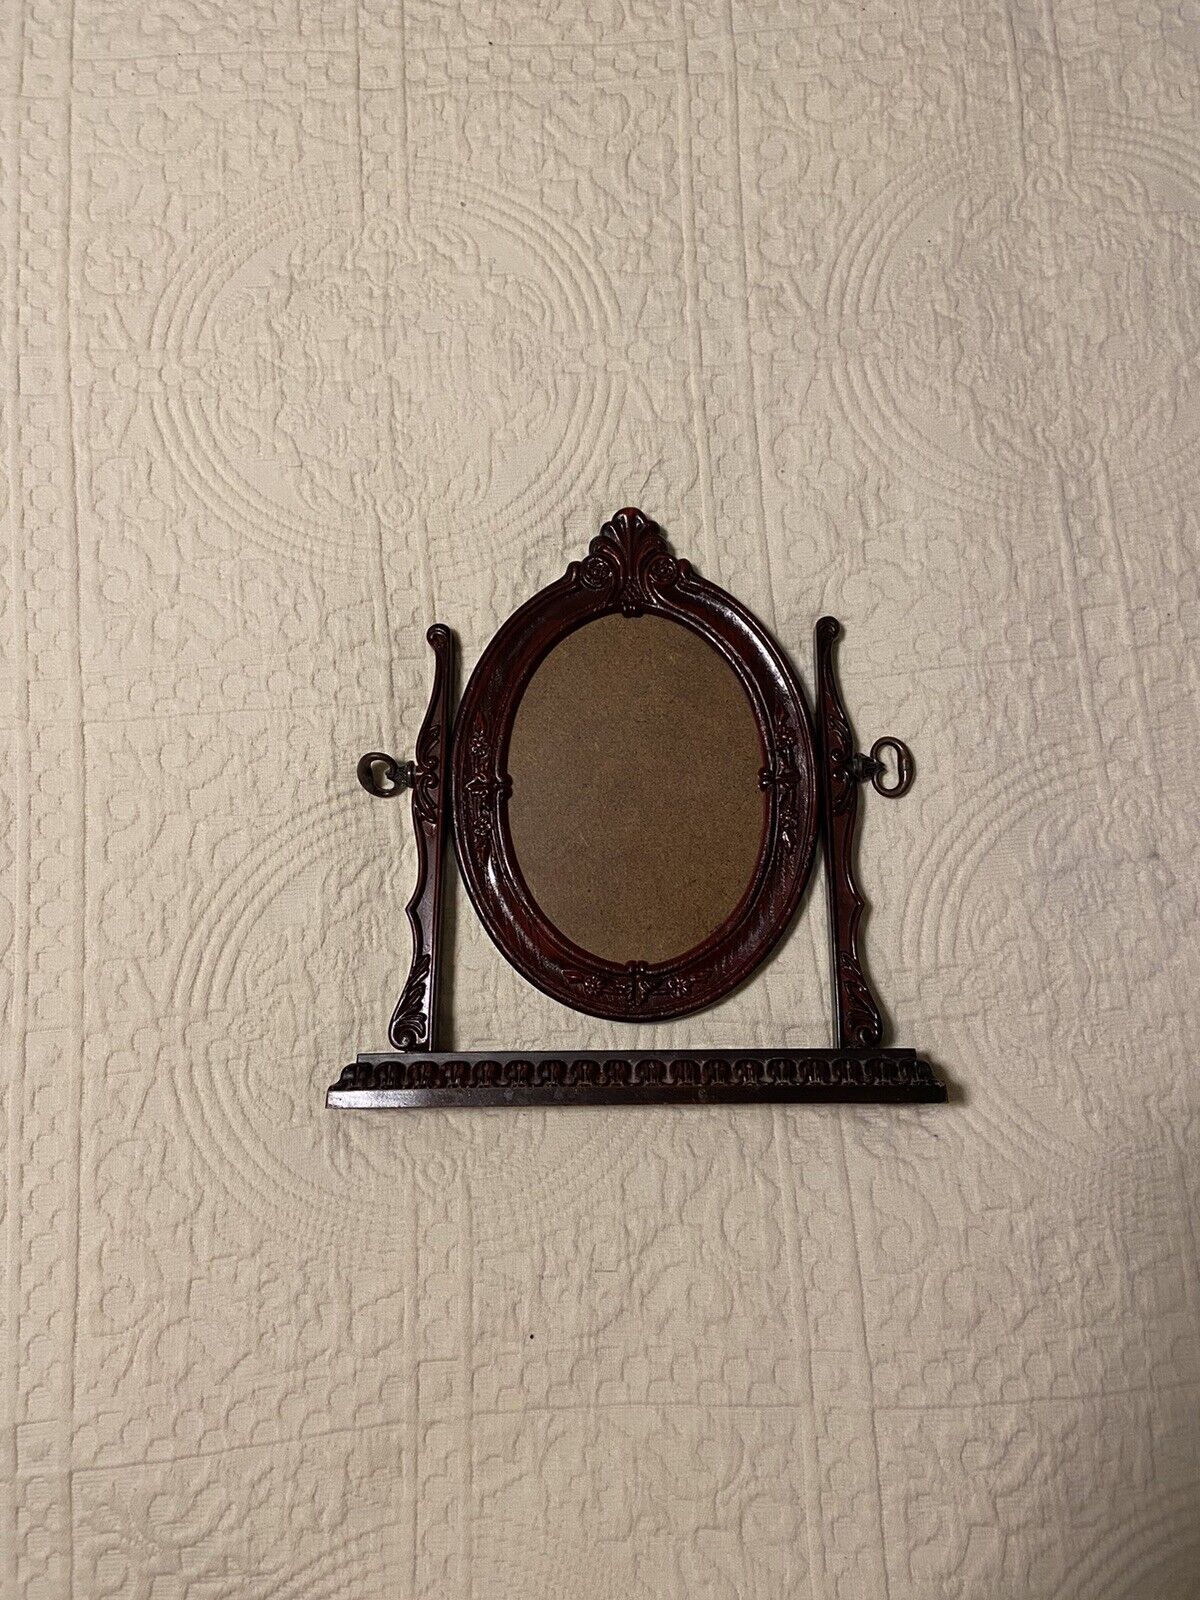 Vintage Ornate Oval Swivel Tilt Picture Frame British Registered Design 5” X 7”